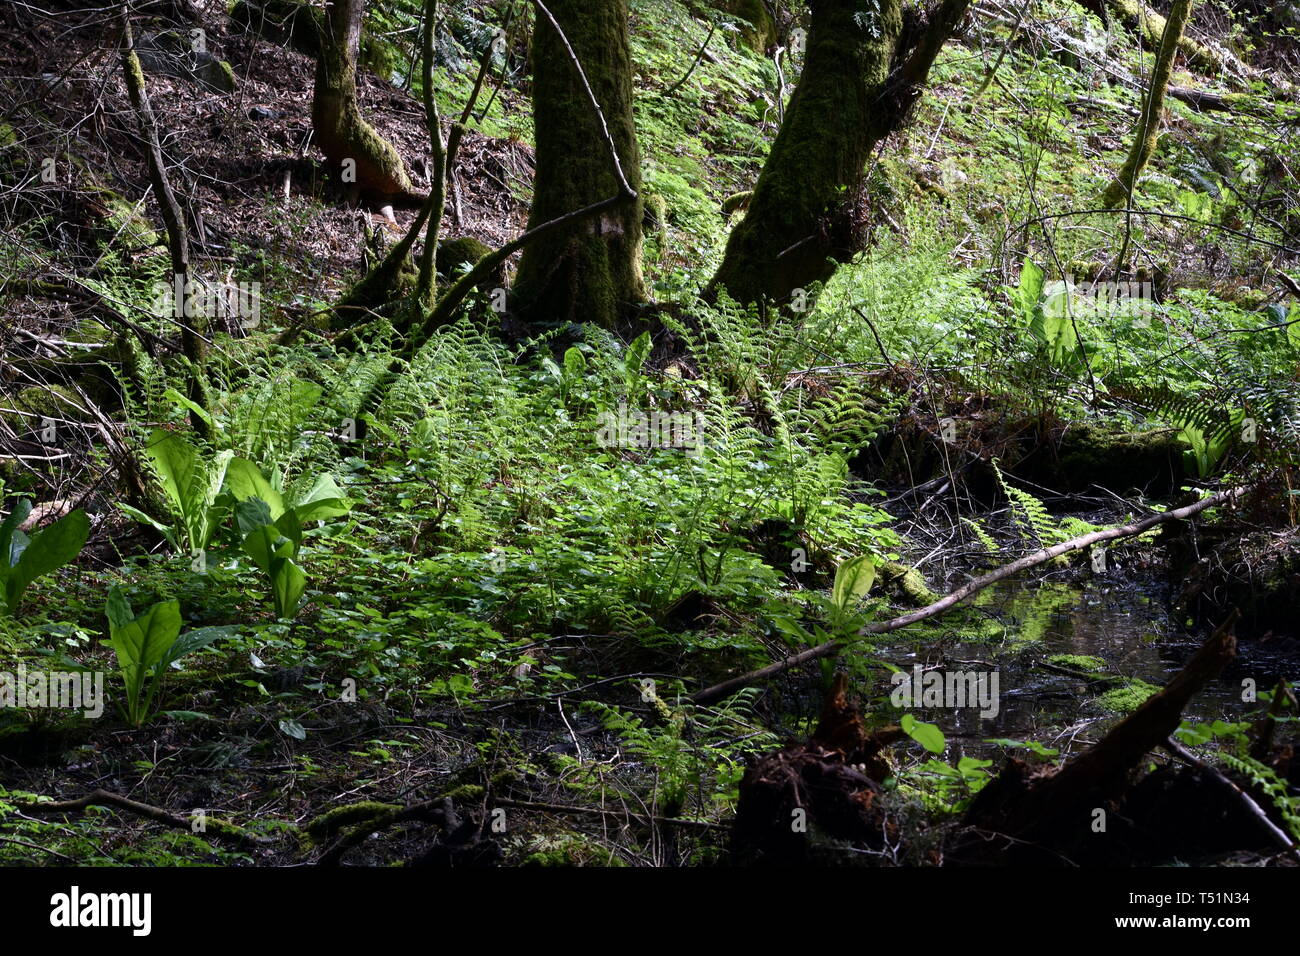 Foto von der üppigen Vegetation in einem Squamish BC Kanada regen Wald gefunden. Eine seltene urban Regenwald mit üppigen Grüns von Farnen, Moosen und alten Bäumen. Stockfoto